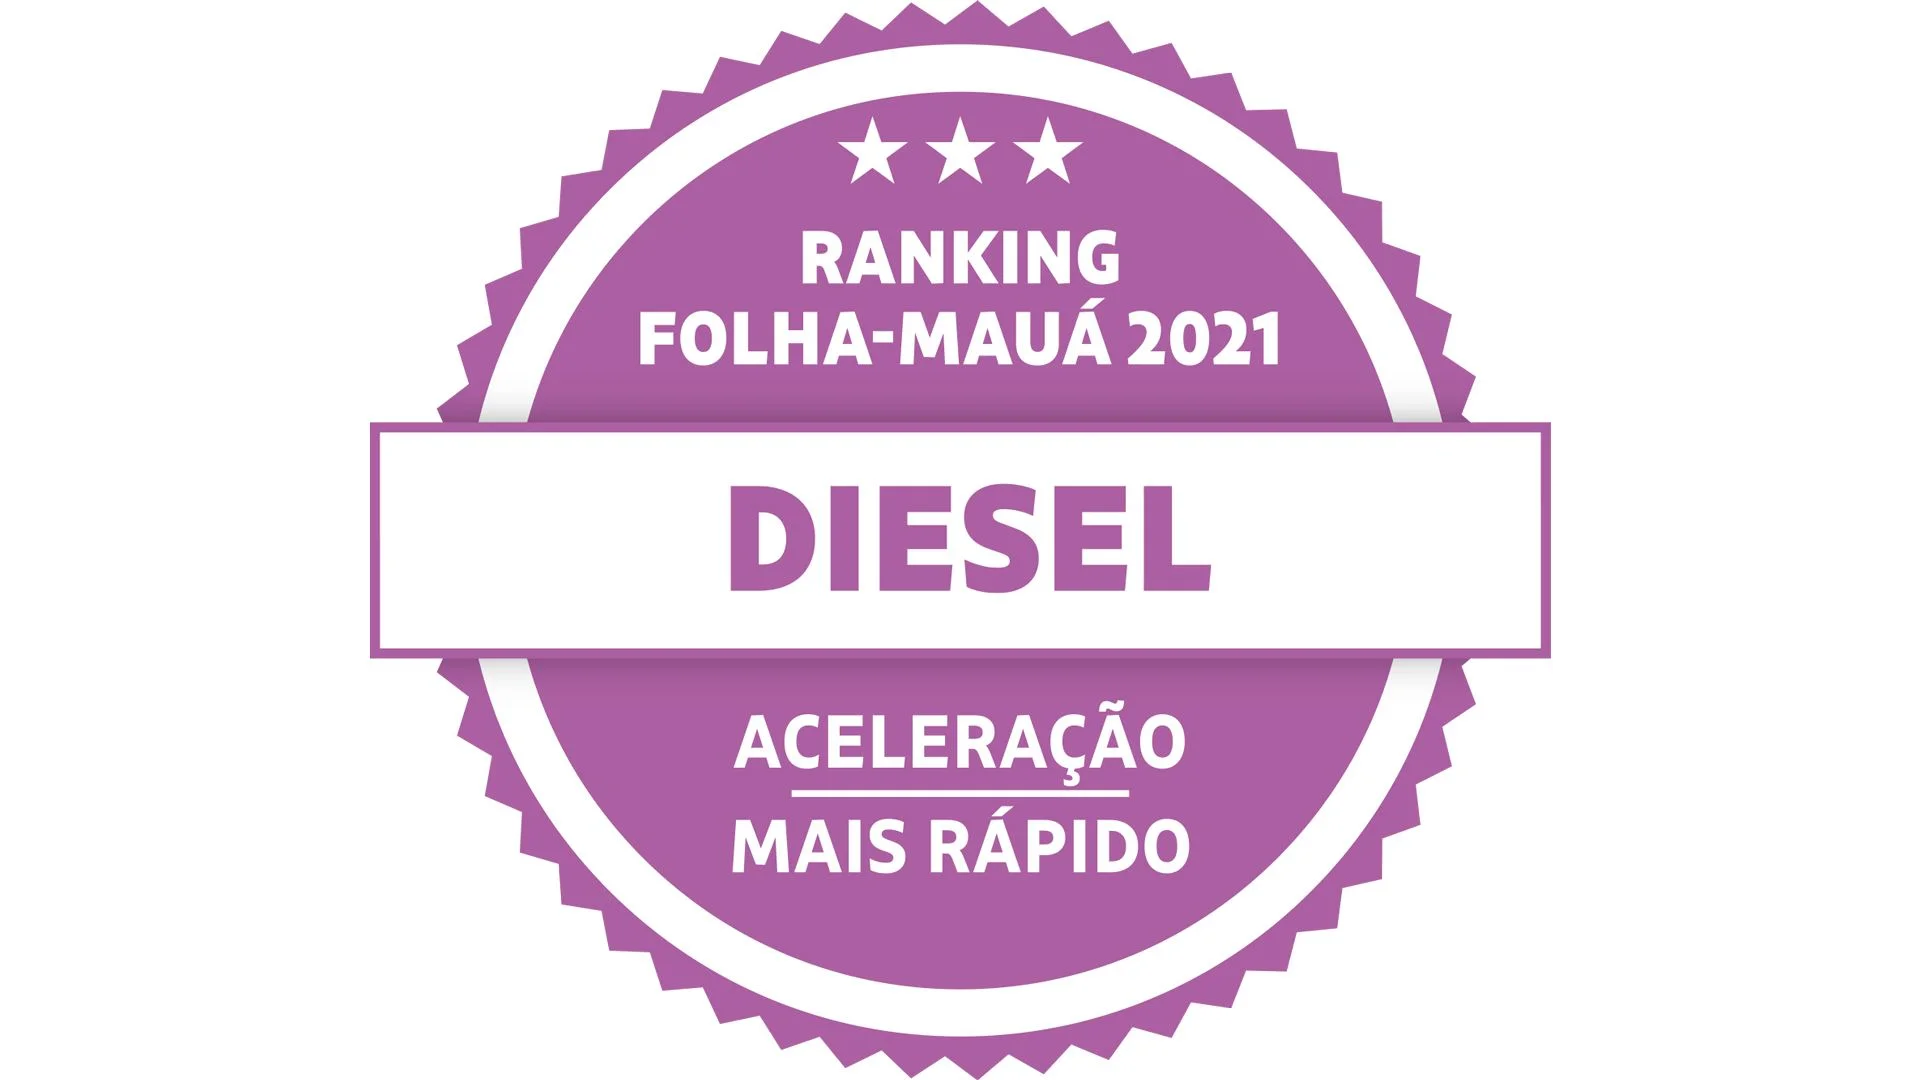 Selo Aceleração Mais Rápido Diesel - Ranking Folha-Mauá 2021